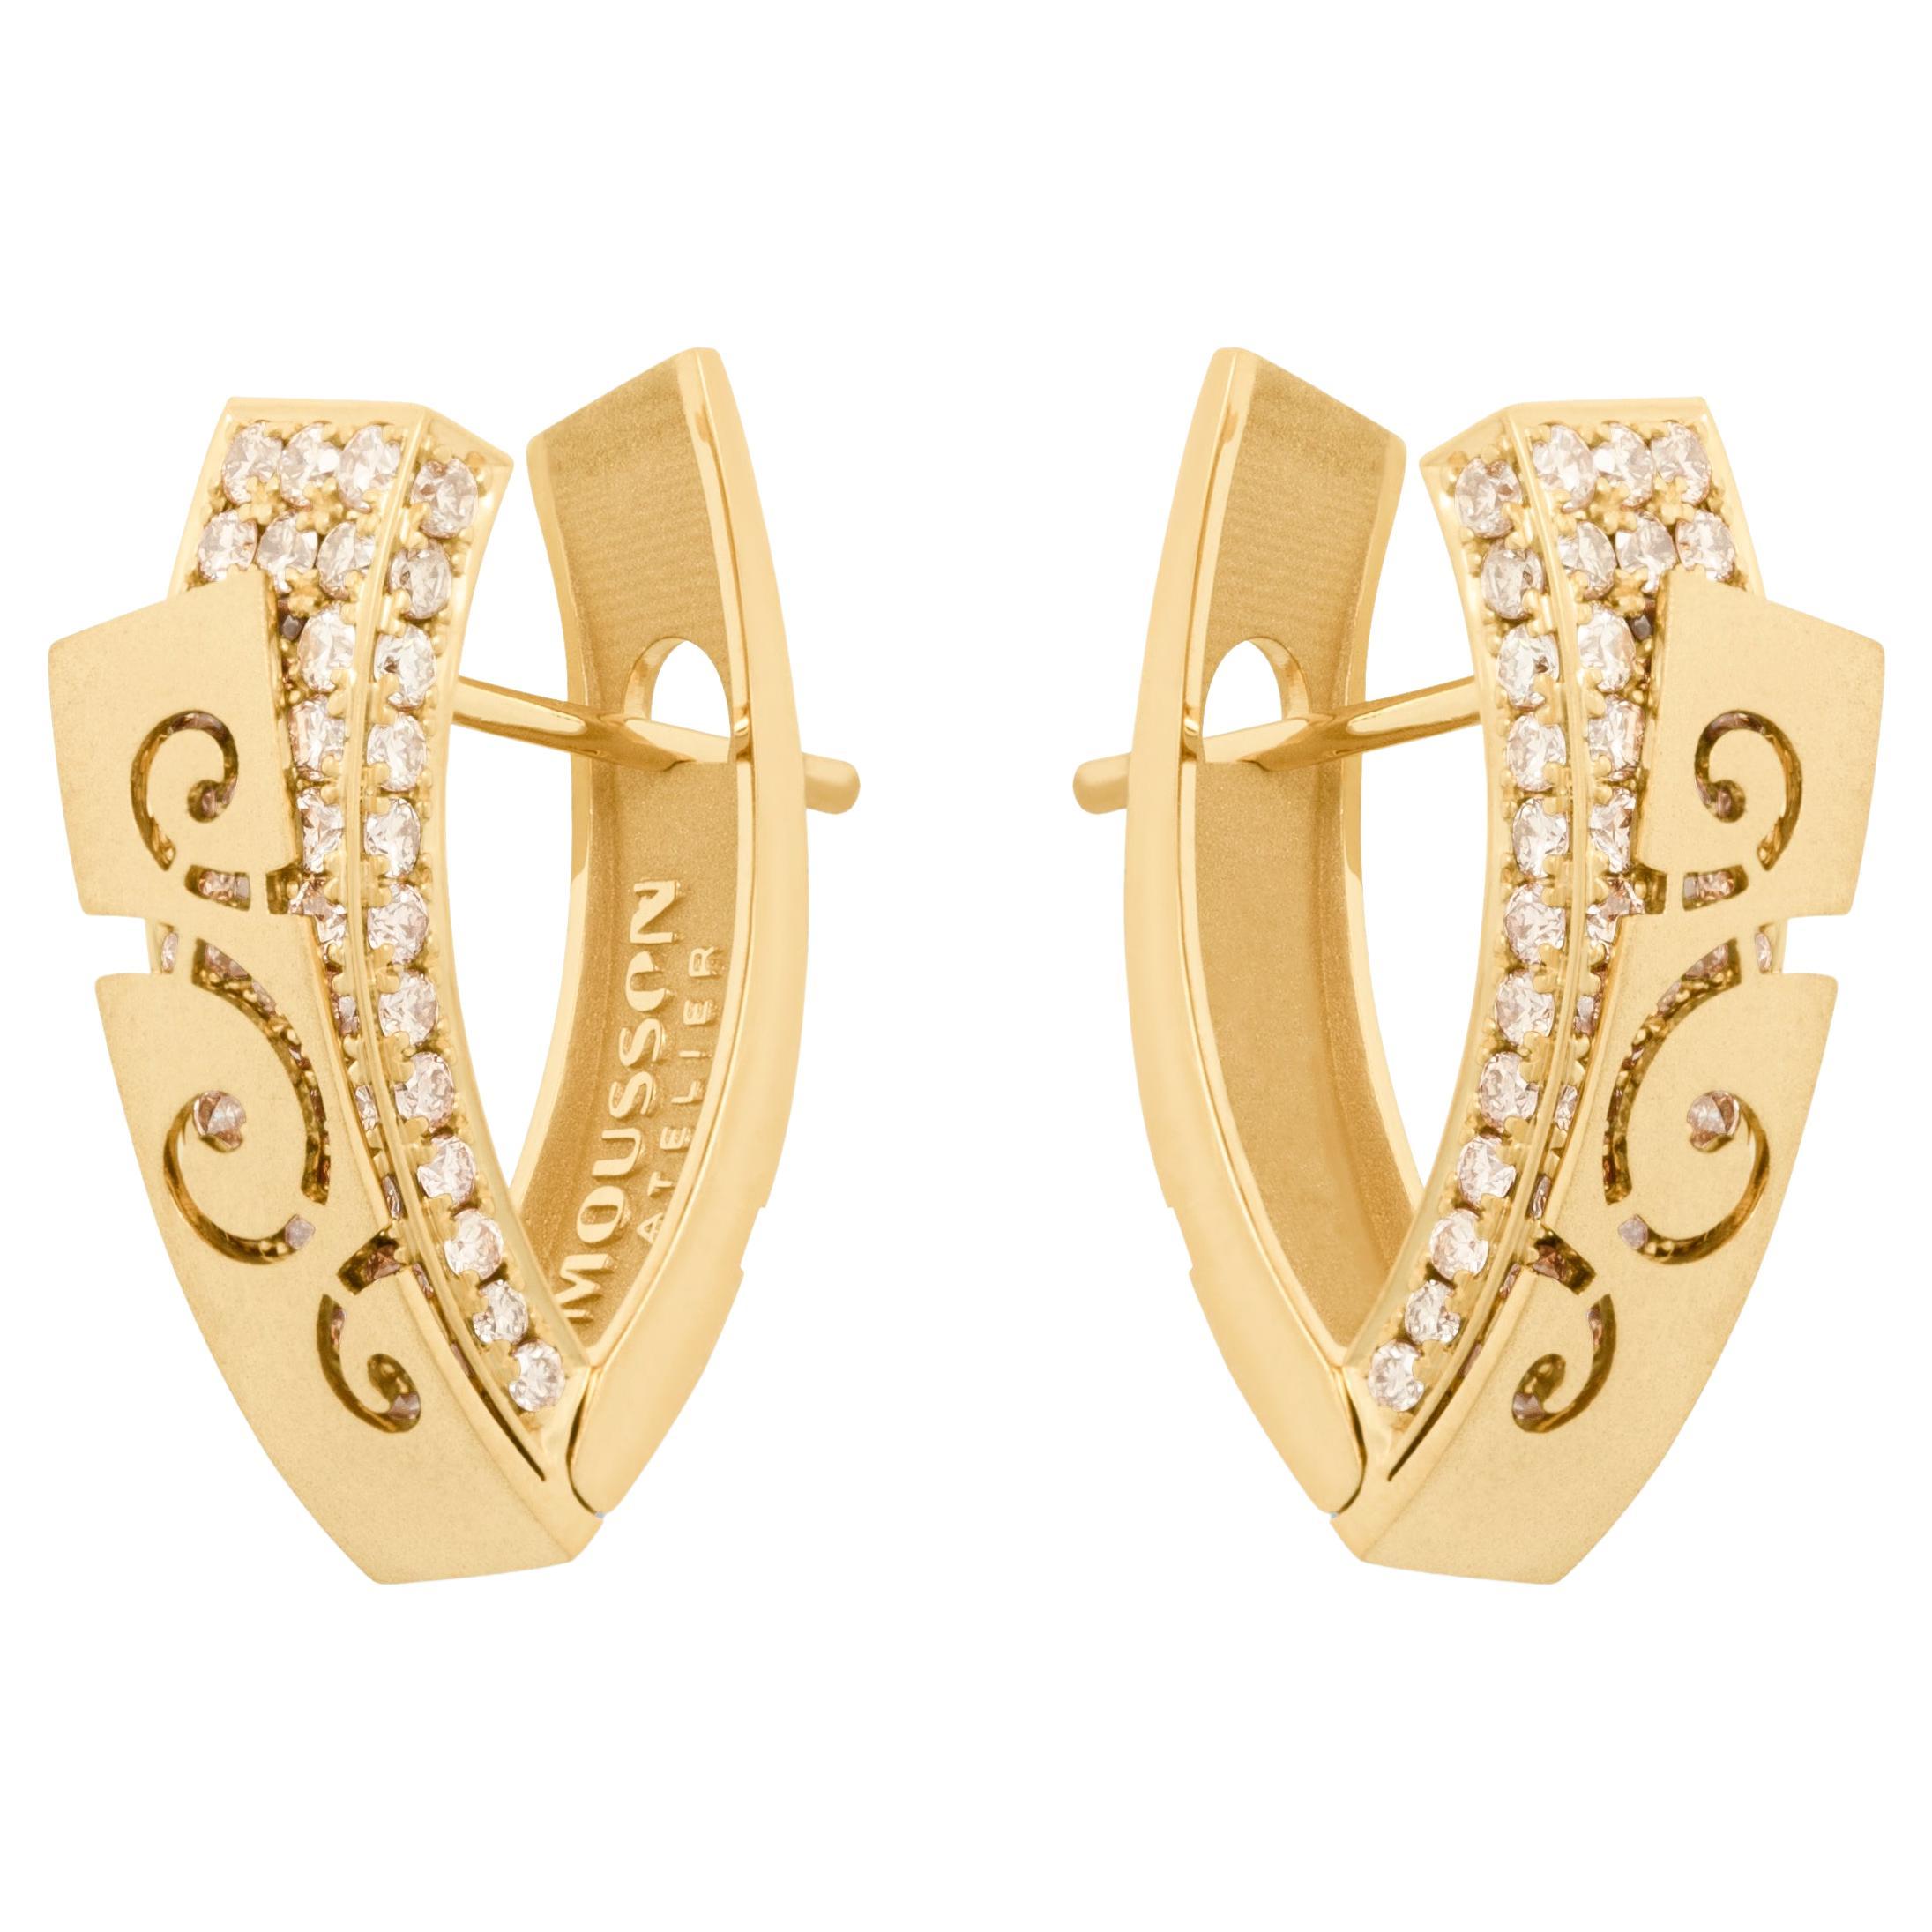 Boucles d'oreilles Pret-a-Porter en or jaune 18 carats et diamants champagne